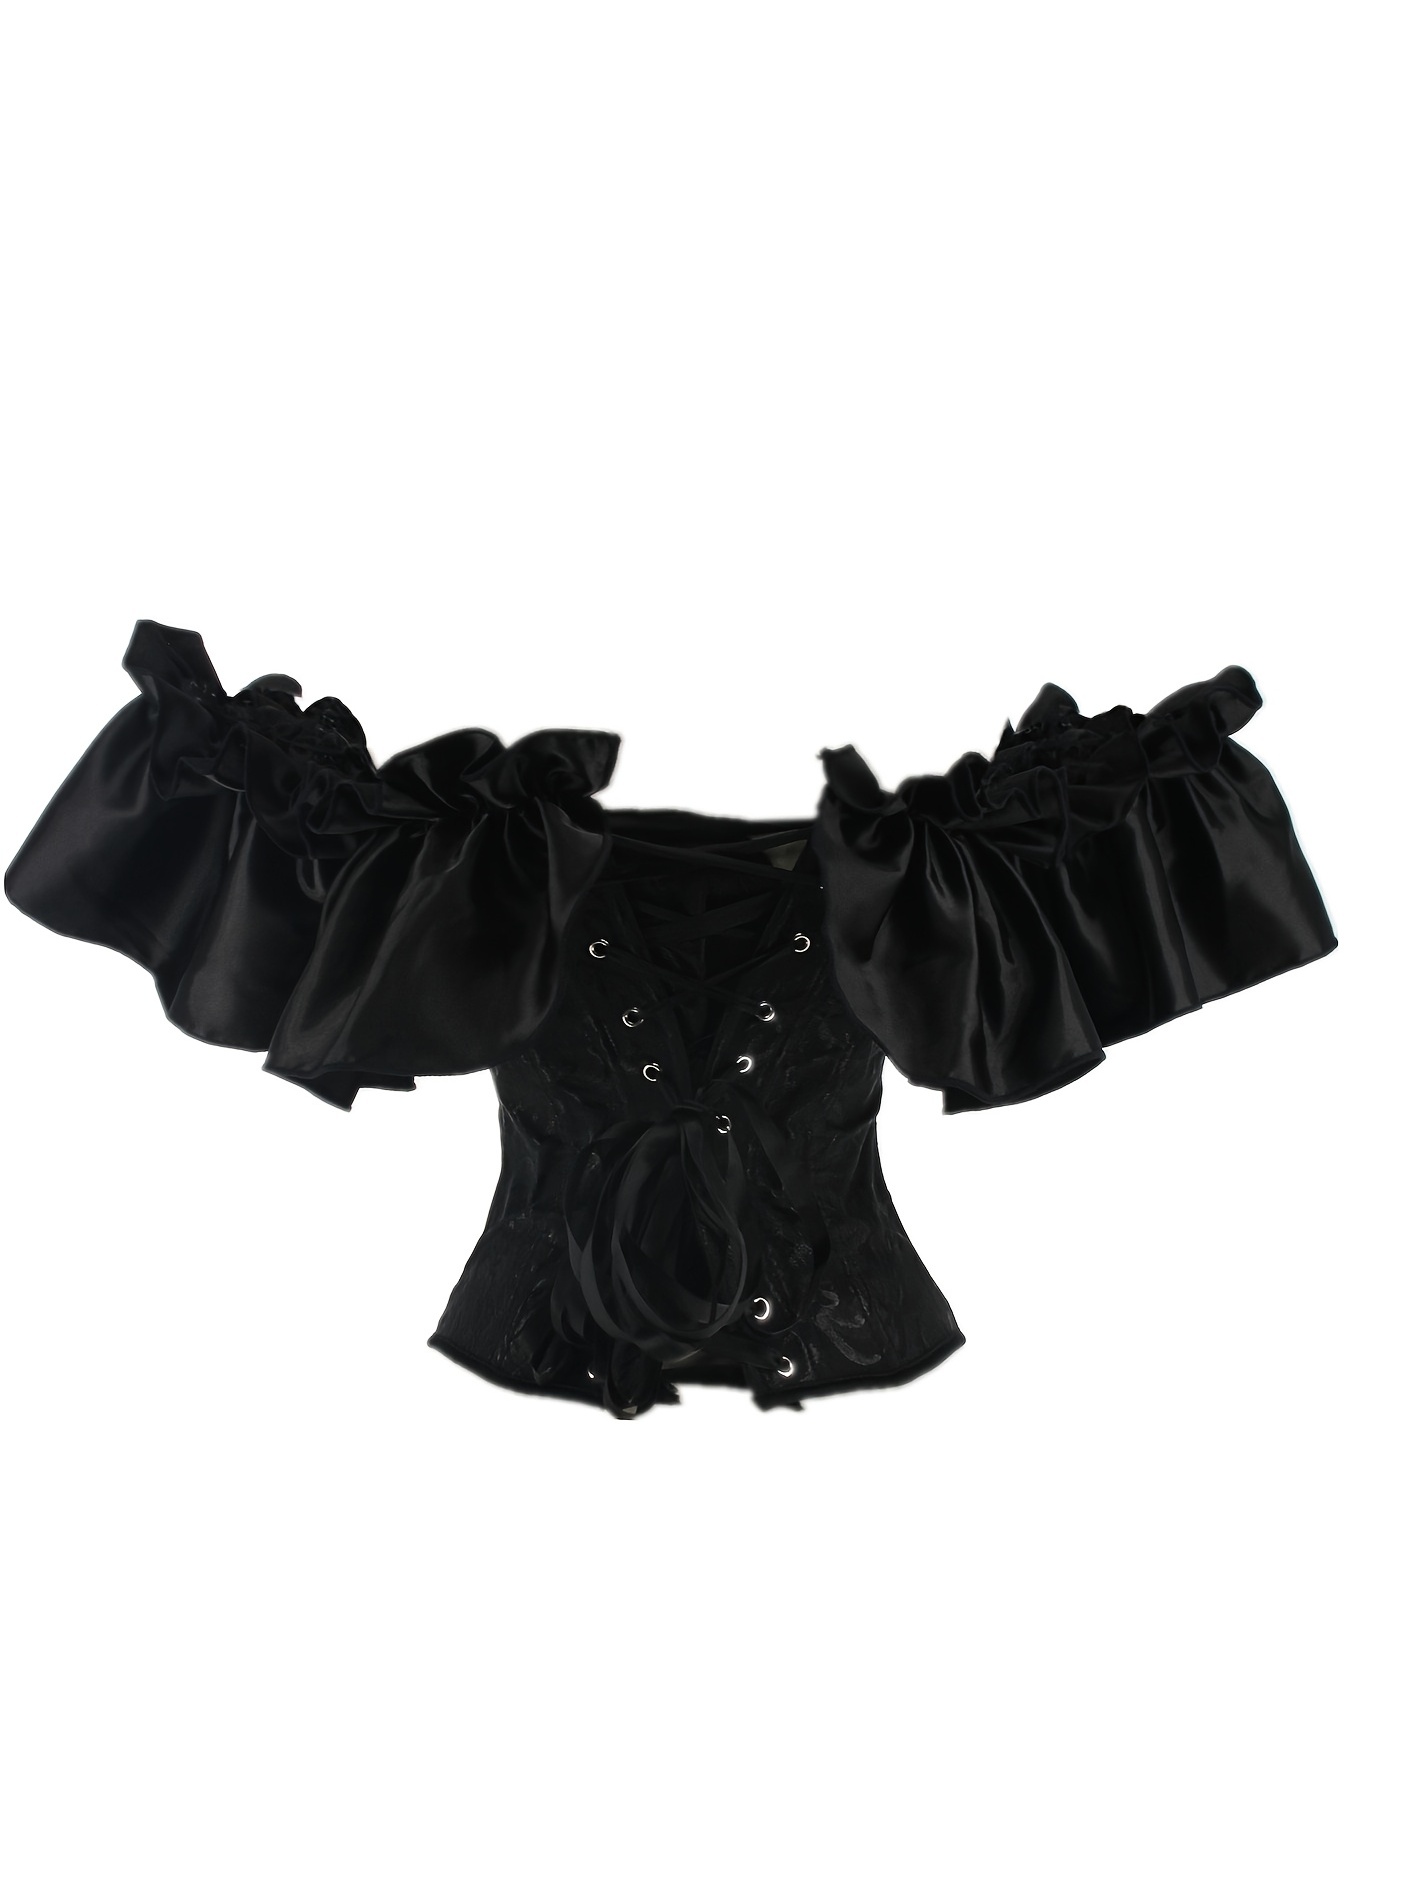 Zapaka Women Black Boning Corset Shapewear With Sleeves